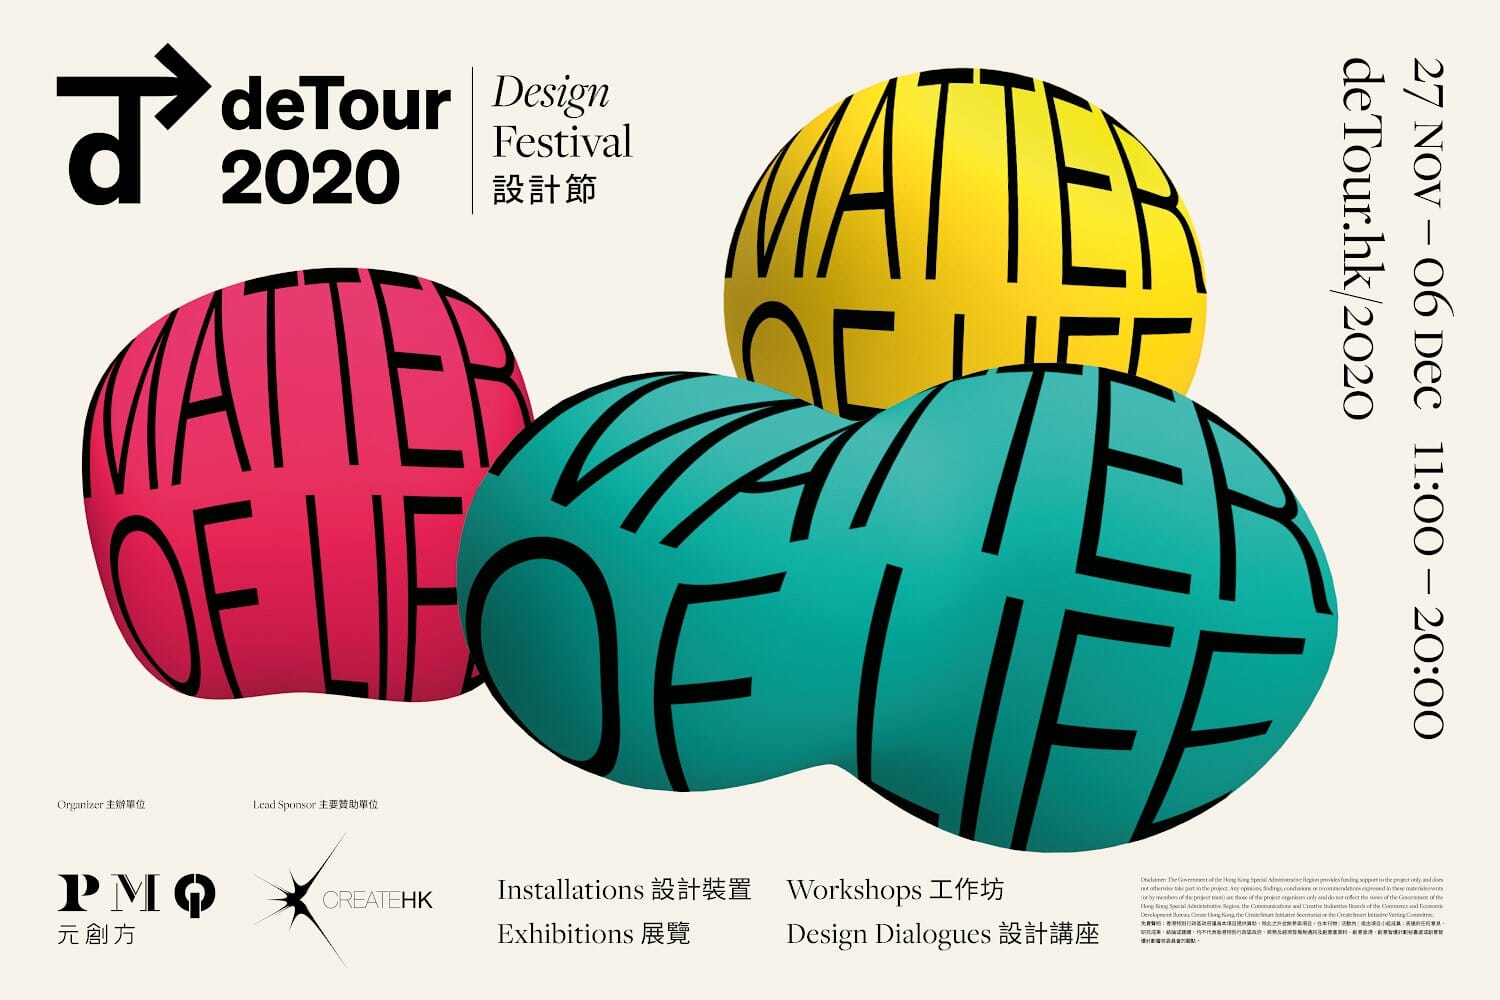 川村真司や太刀川英輔が参加 香港デザインイベント 第6回detour が11月27日から開催 デザイン情報サイト Jdn